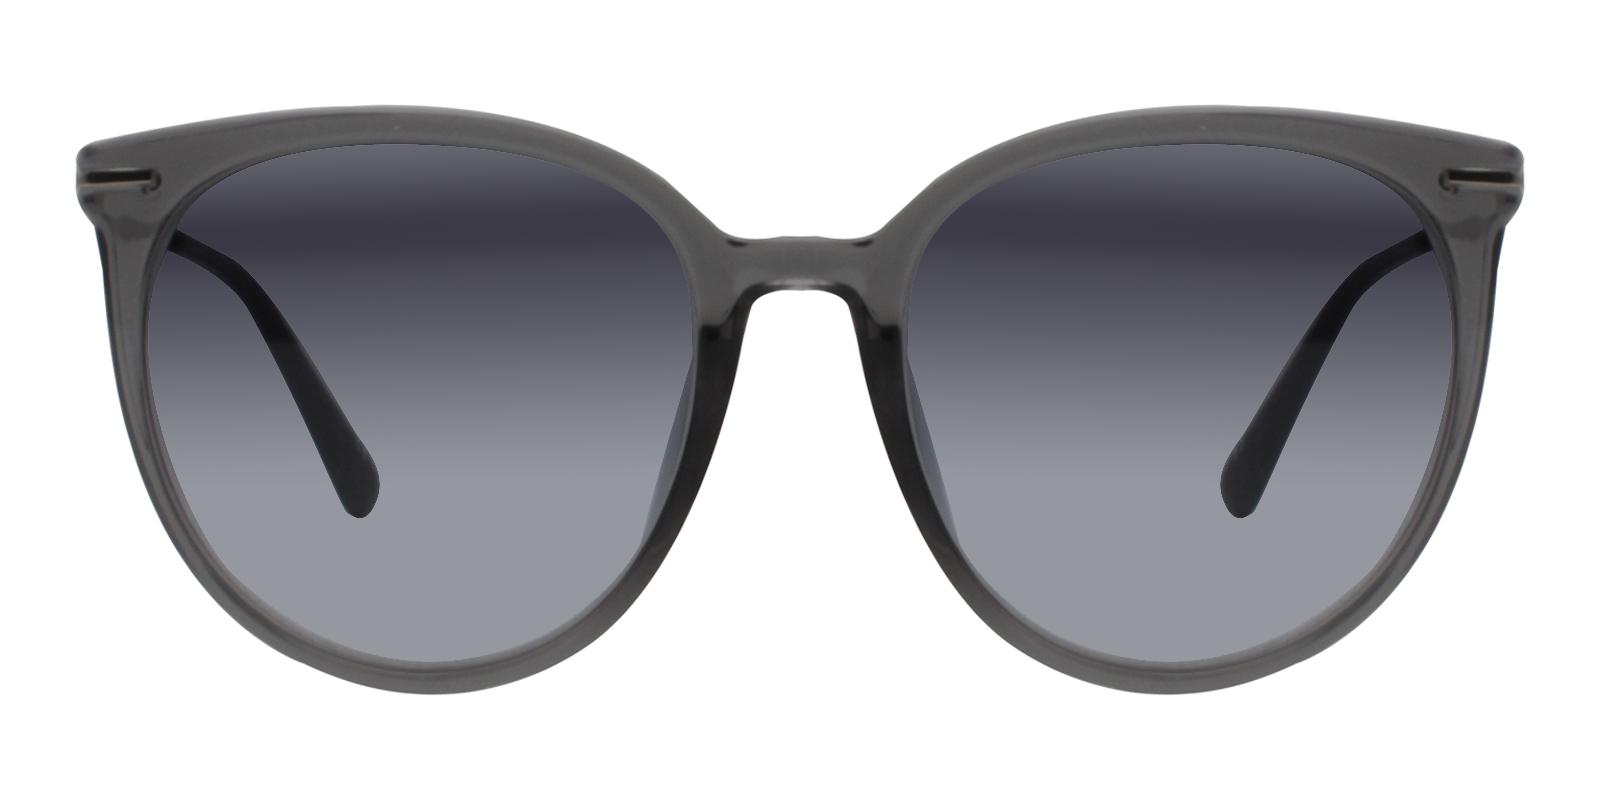 S6092 Round Prescription Sunglasses Gray